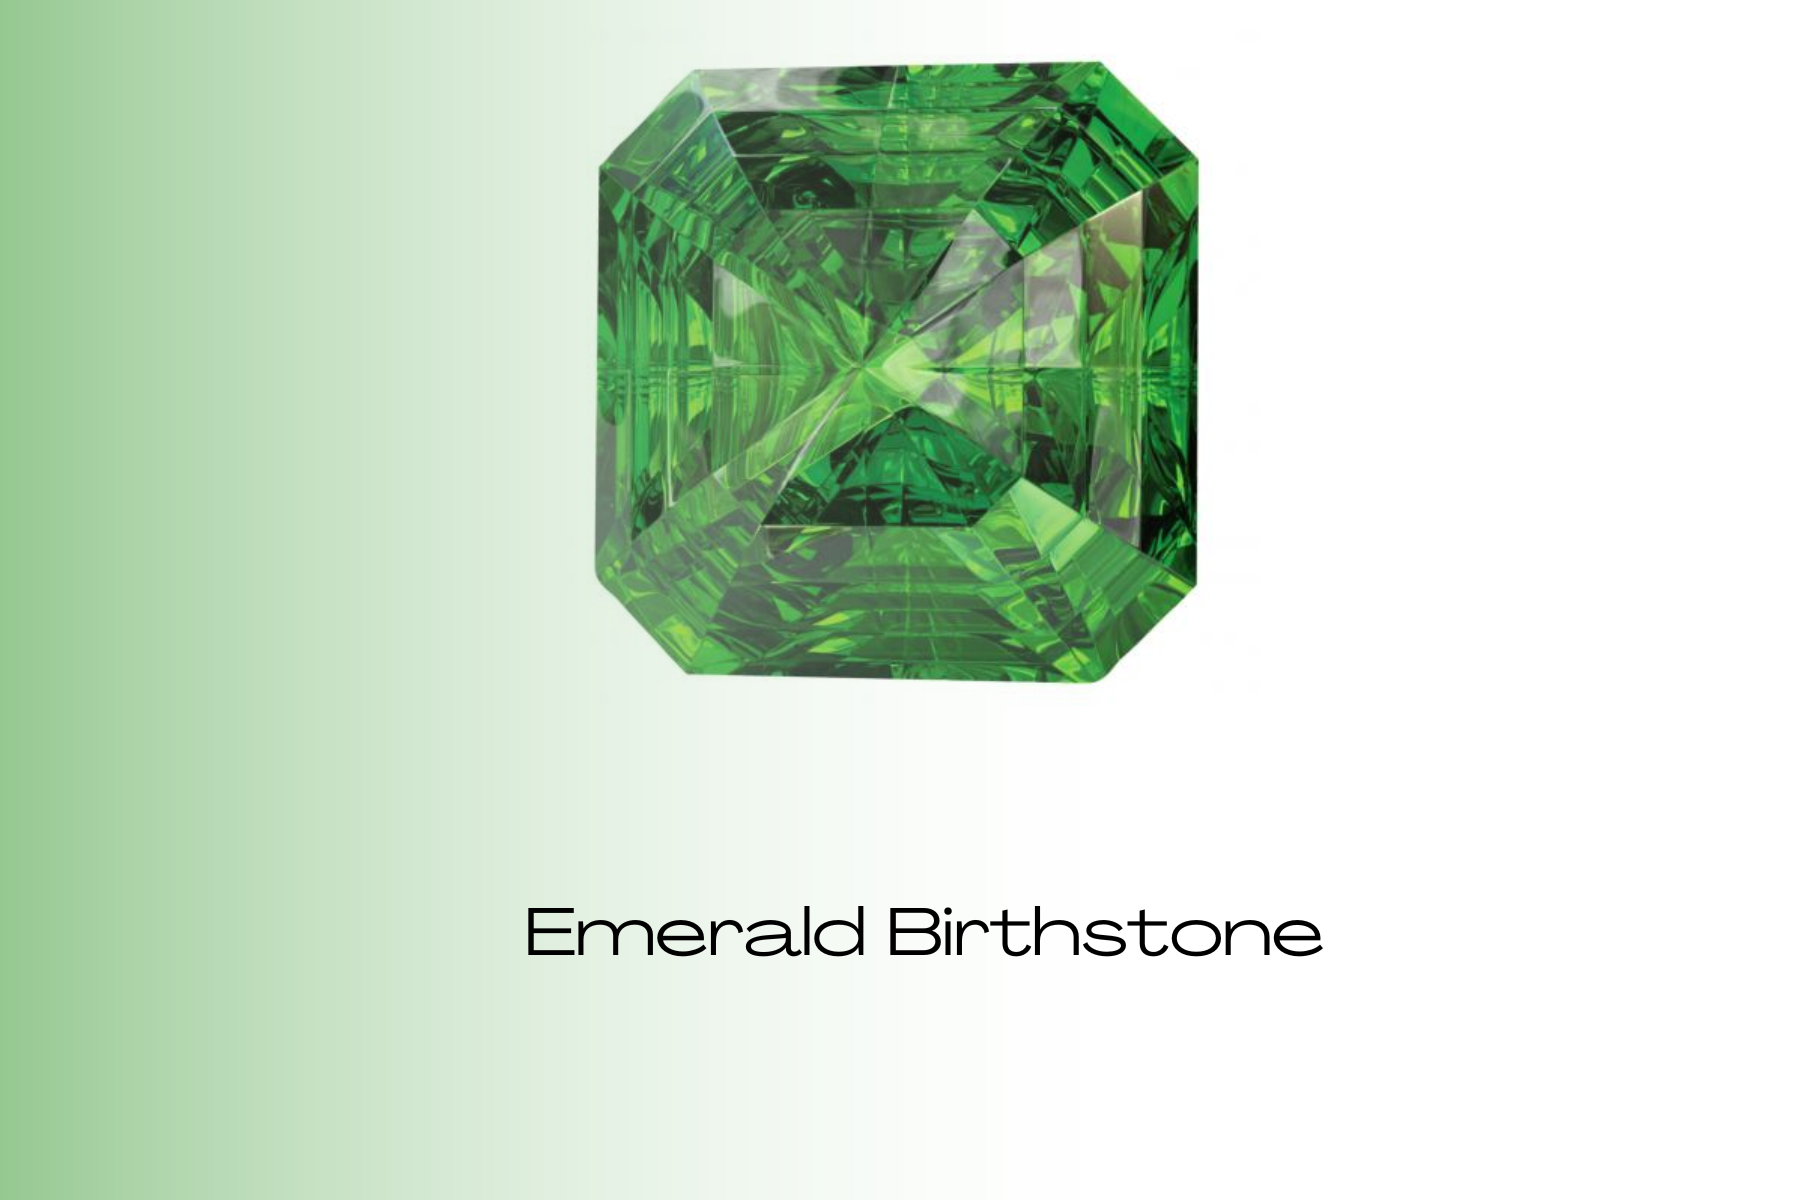 Octagonal-shaped green emerald